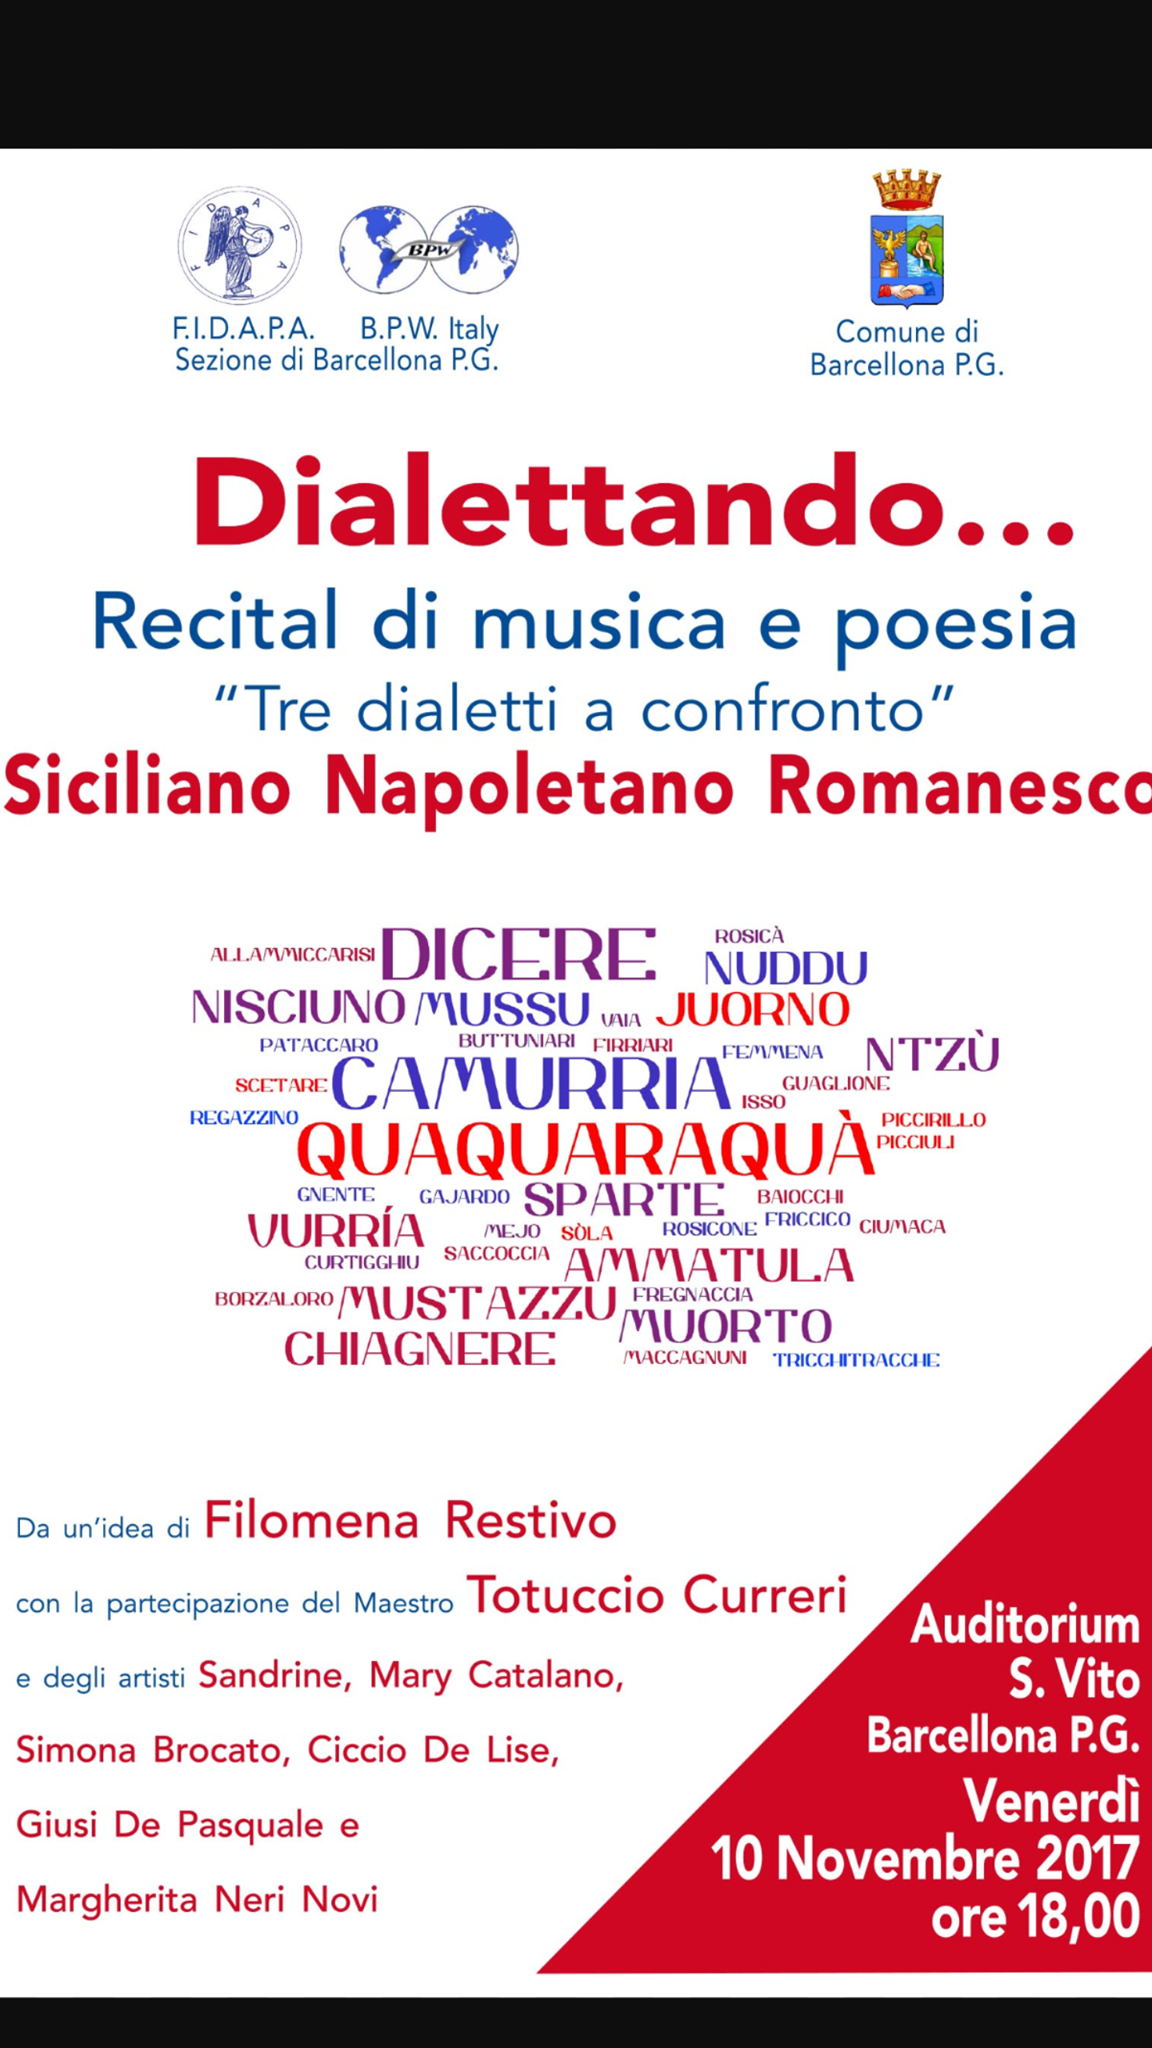 Barcellona PG. Il Recital di musica e poesia “Dialettando…” all’Auditorium San Vito